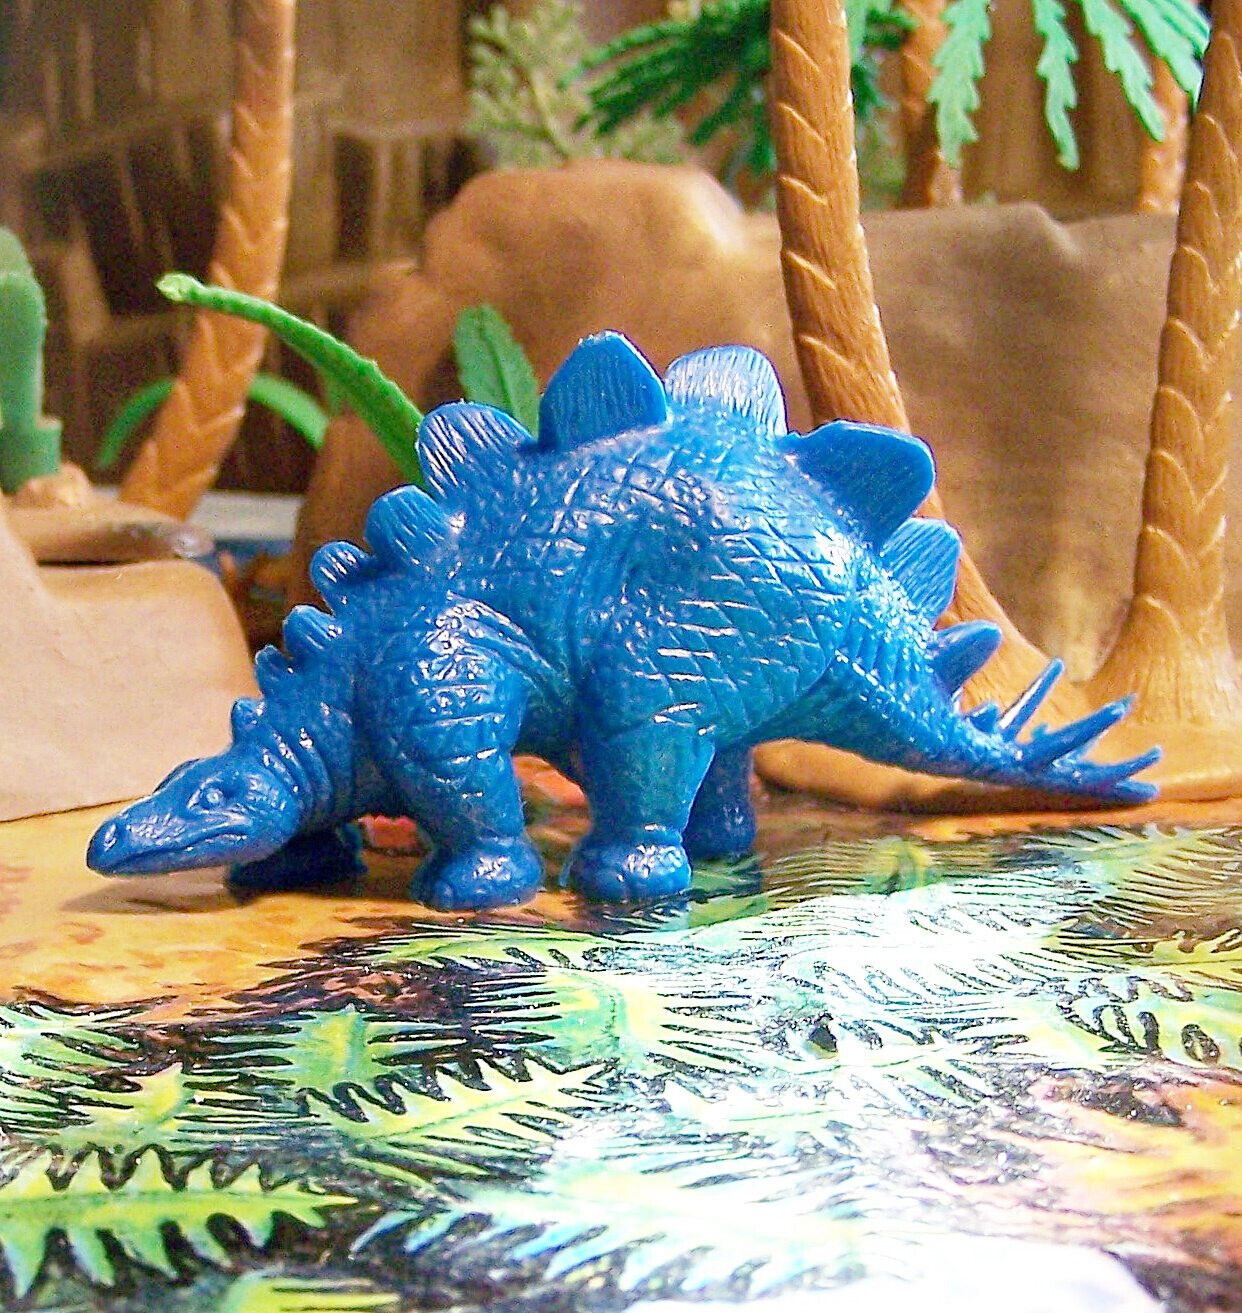 Marx Post-1970s Type I Stegosaurus Dinosaur, Waxy Blue